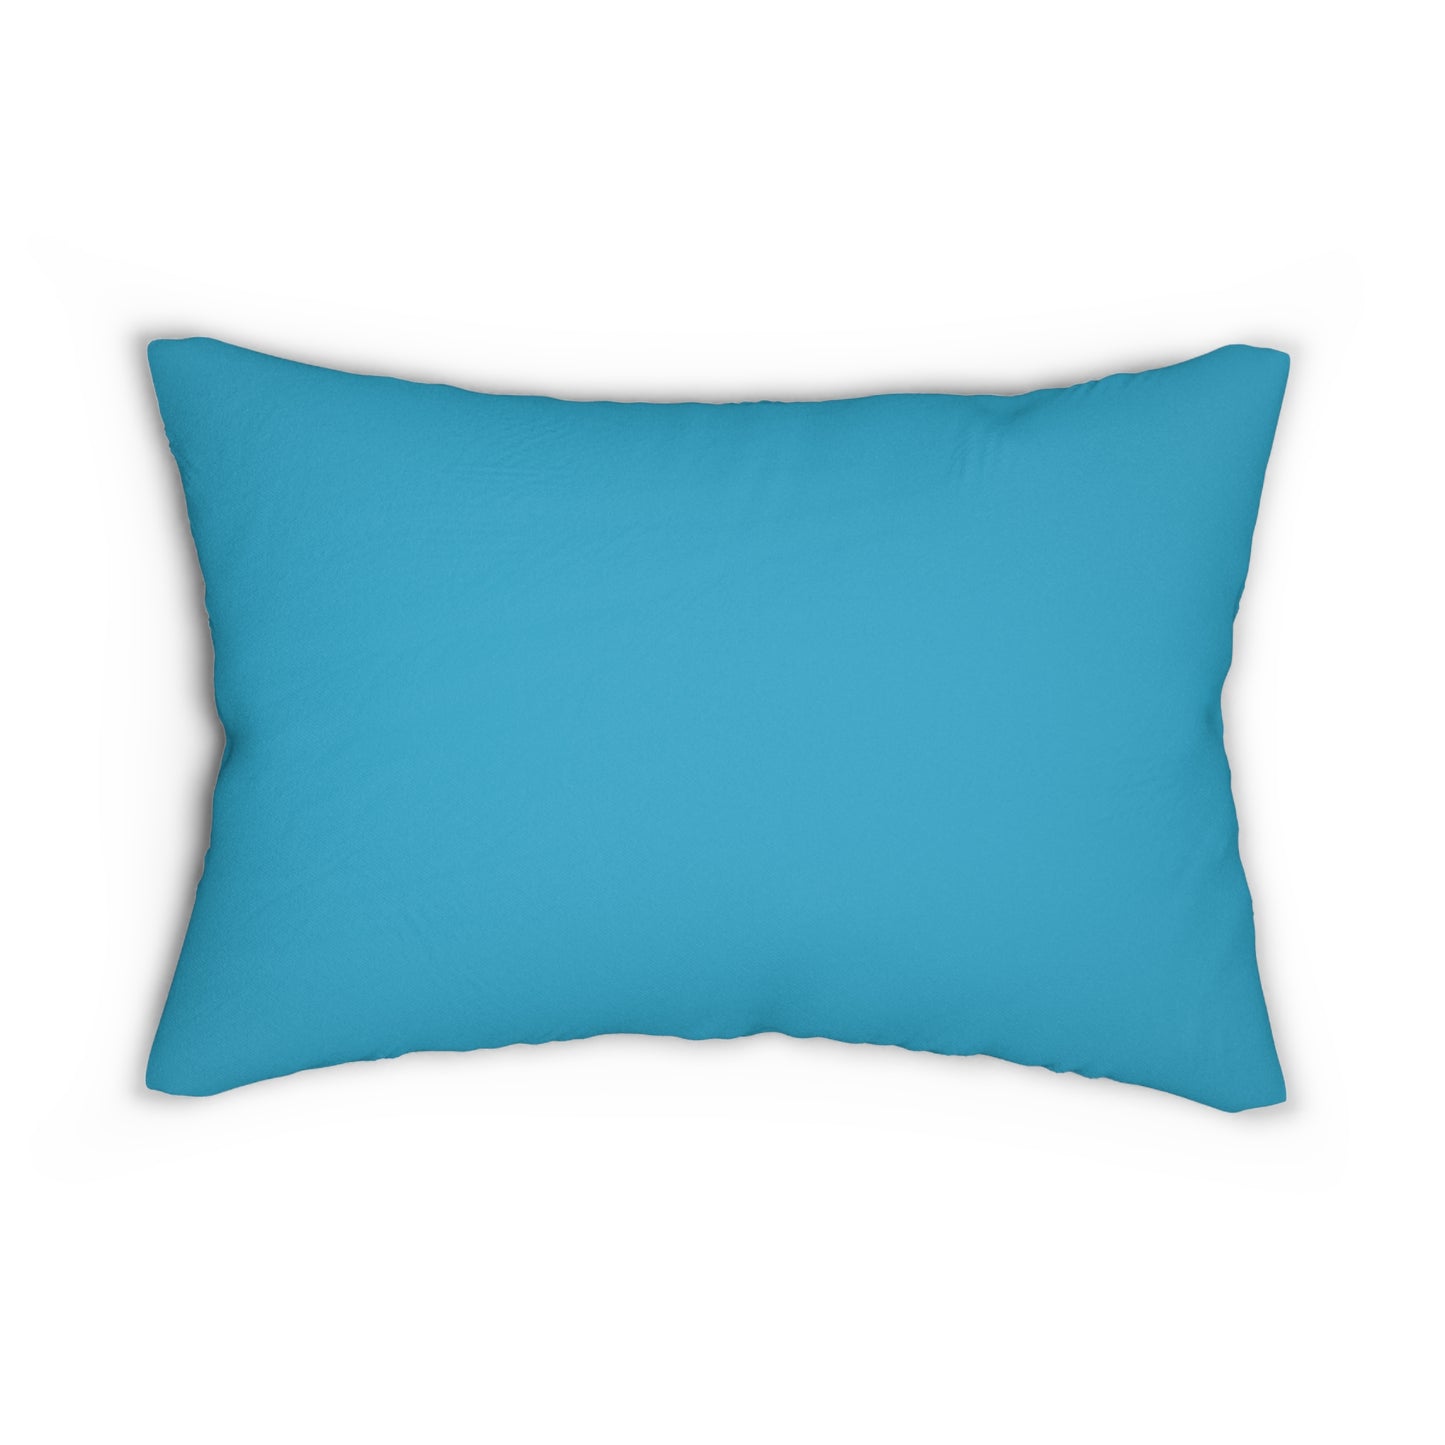 Hola Beaches Spun Polyester Lumbar Pillow